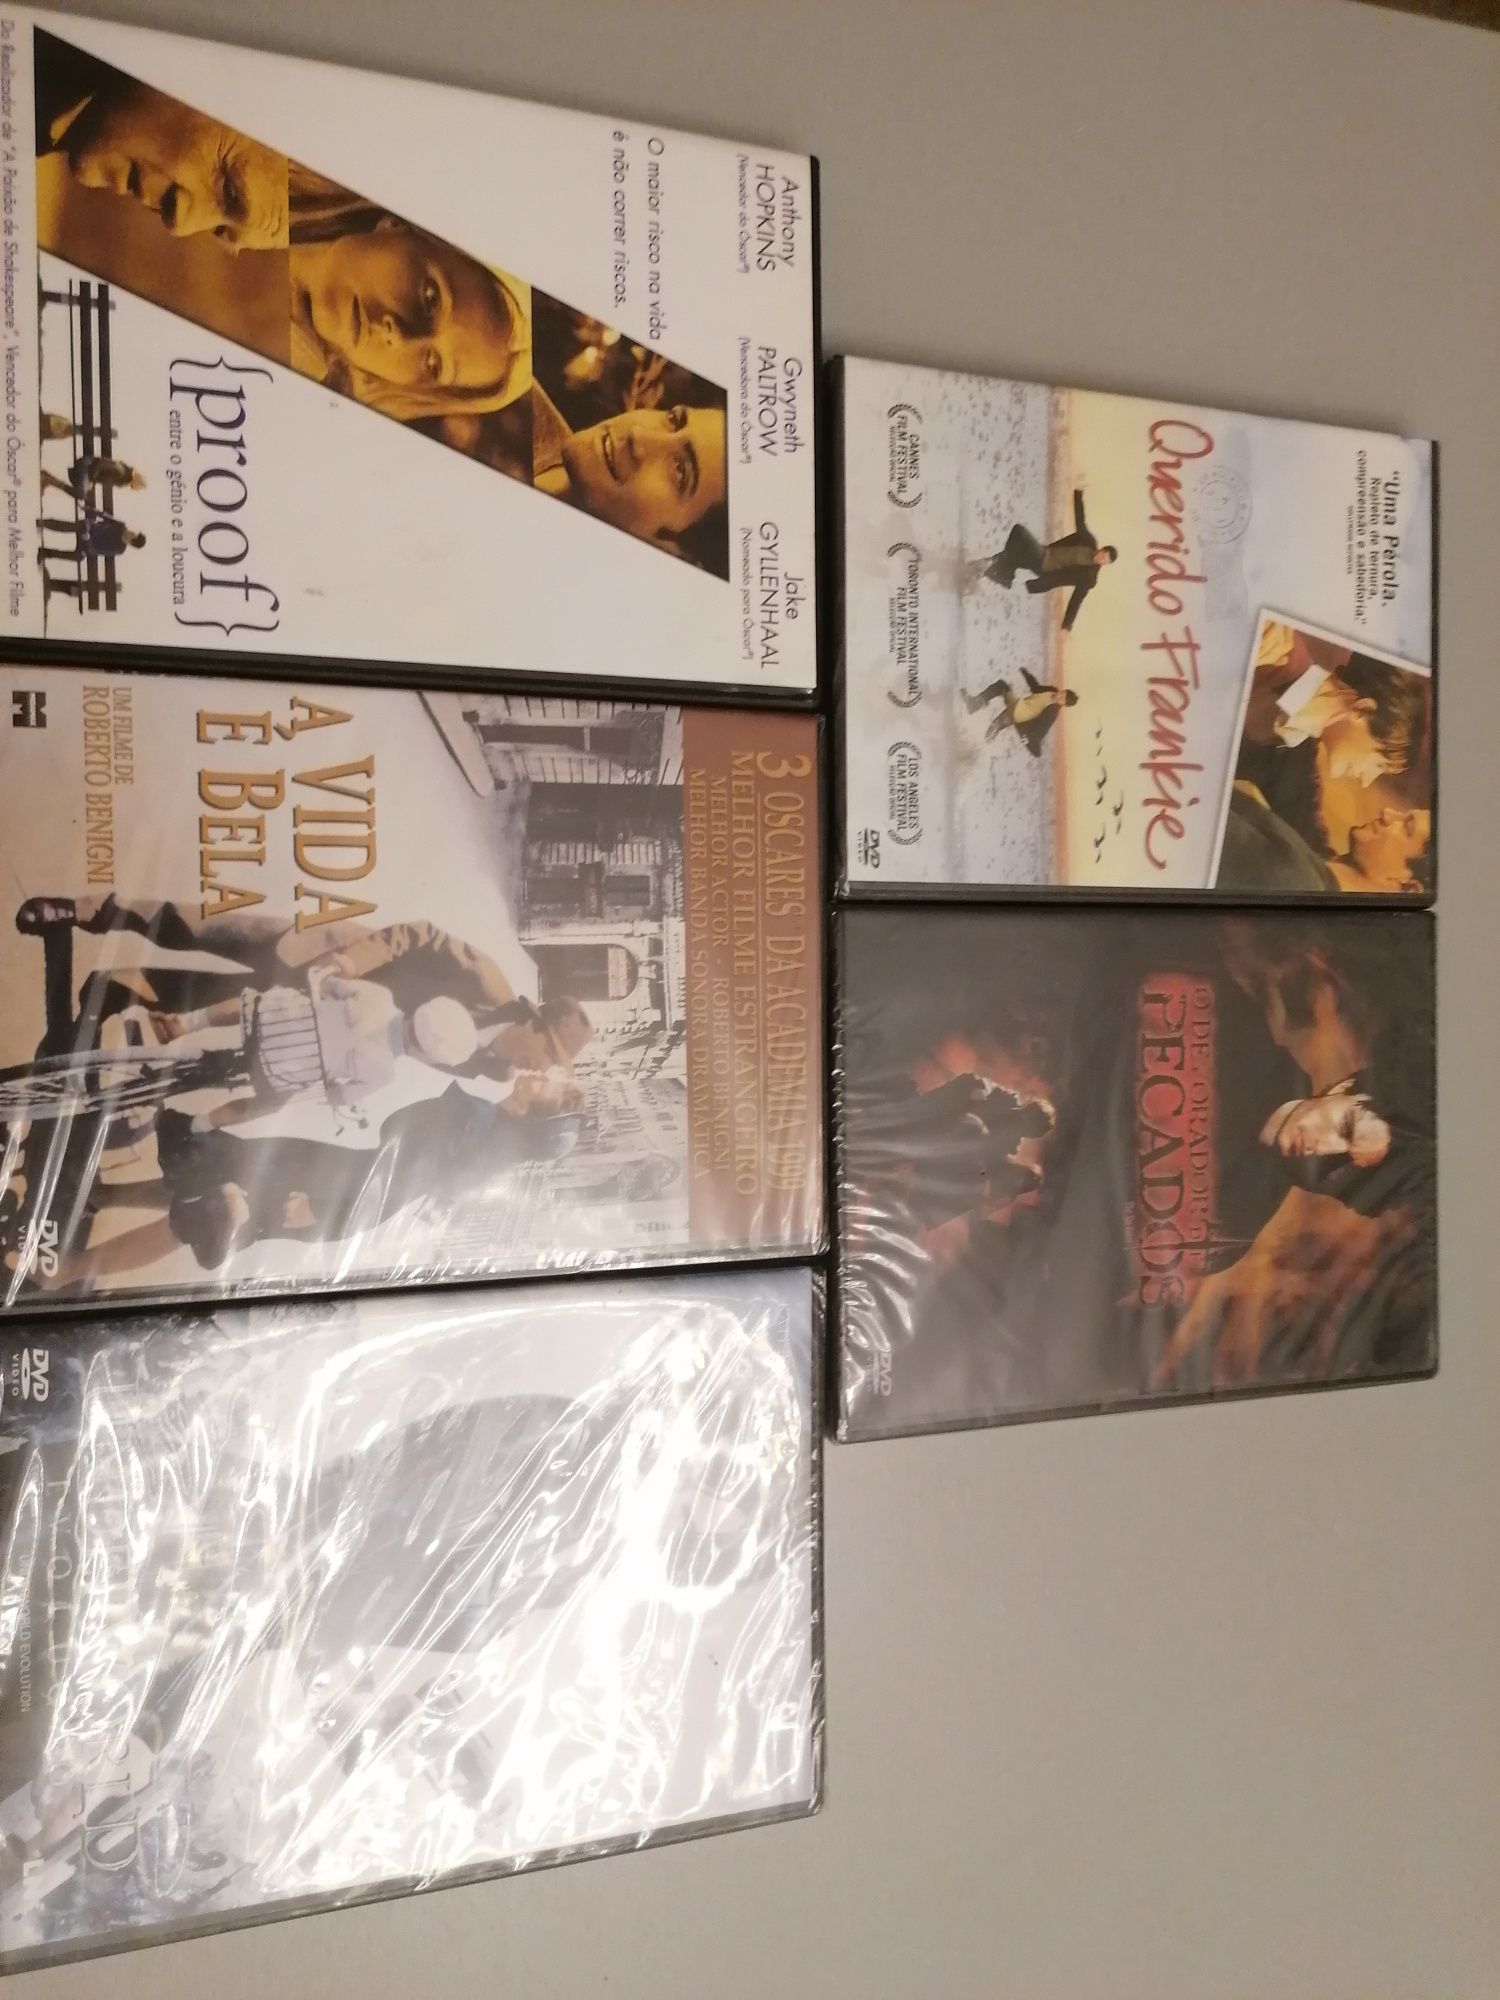 Conjunto 5 filmes DVD novos Embalados